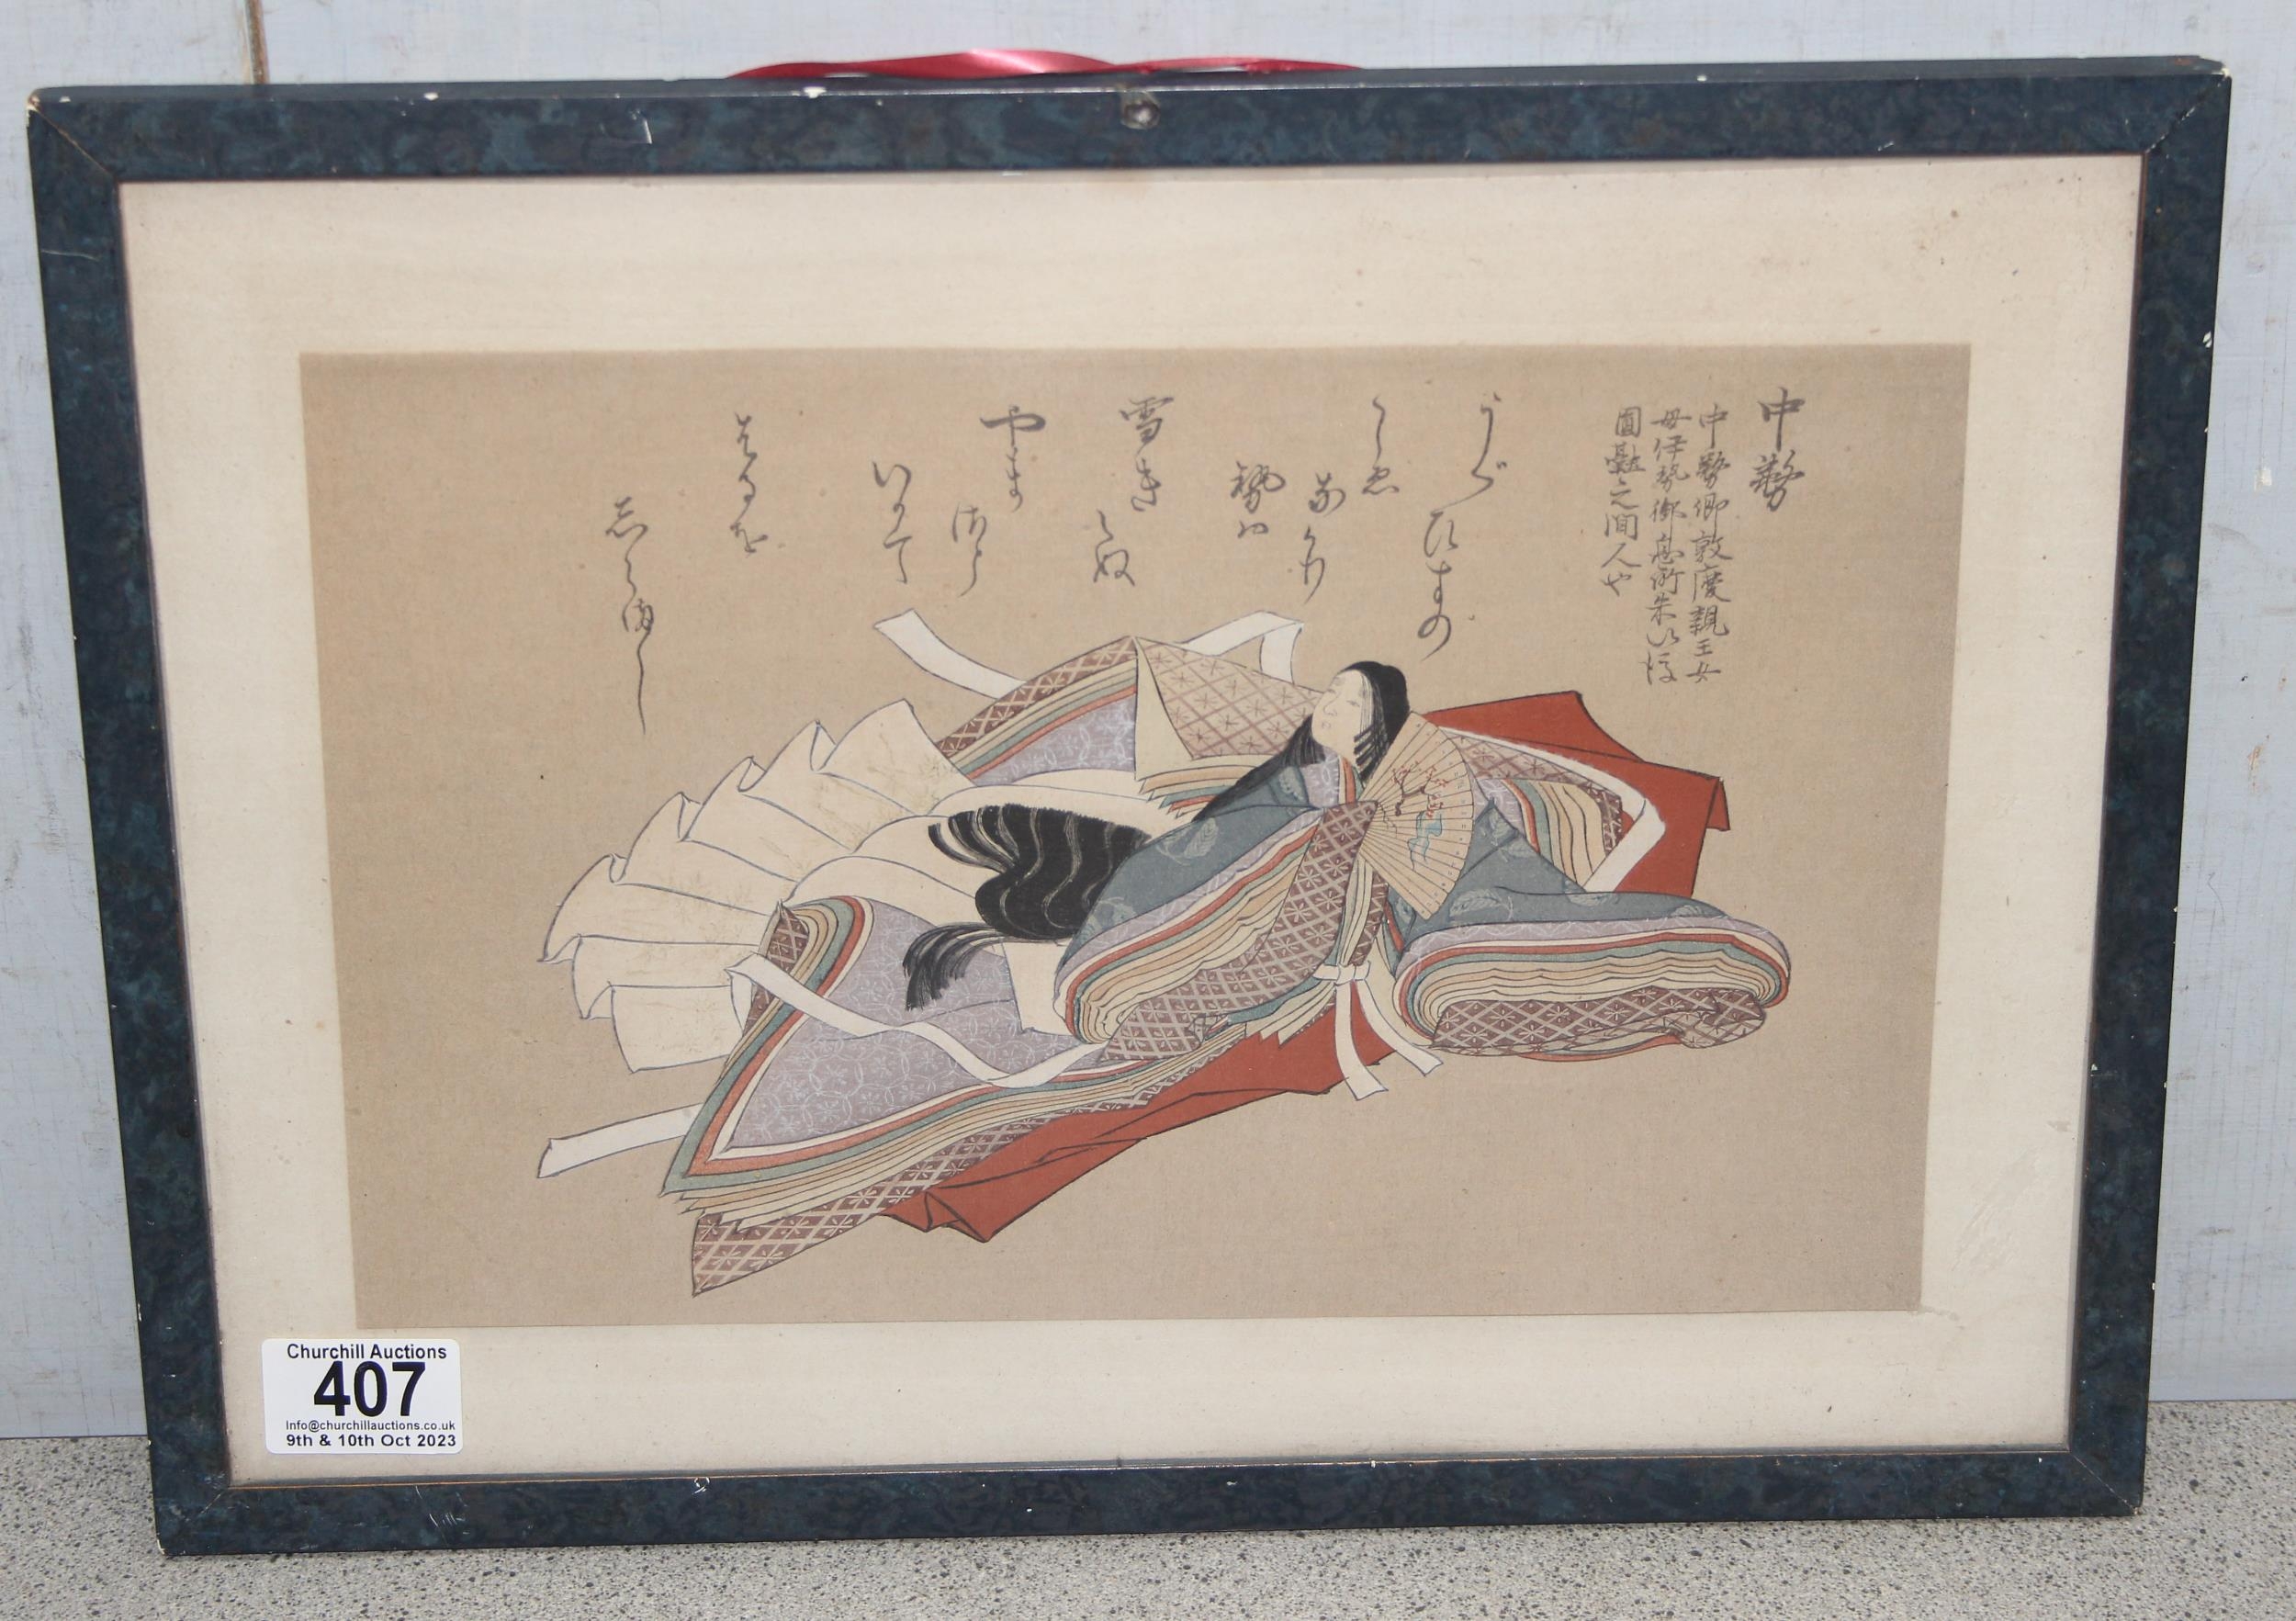 After Nobuzane Fujiwara, vintage Japanese woodblock print of 